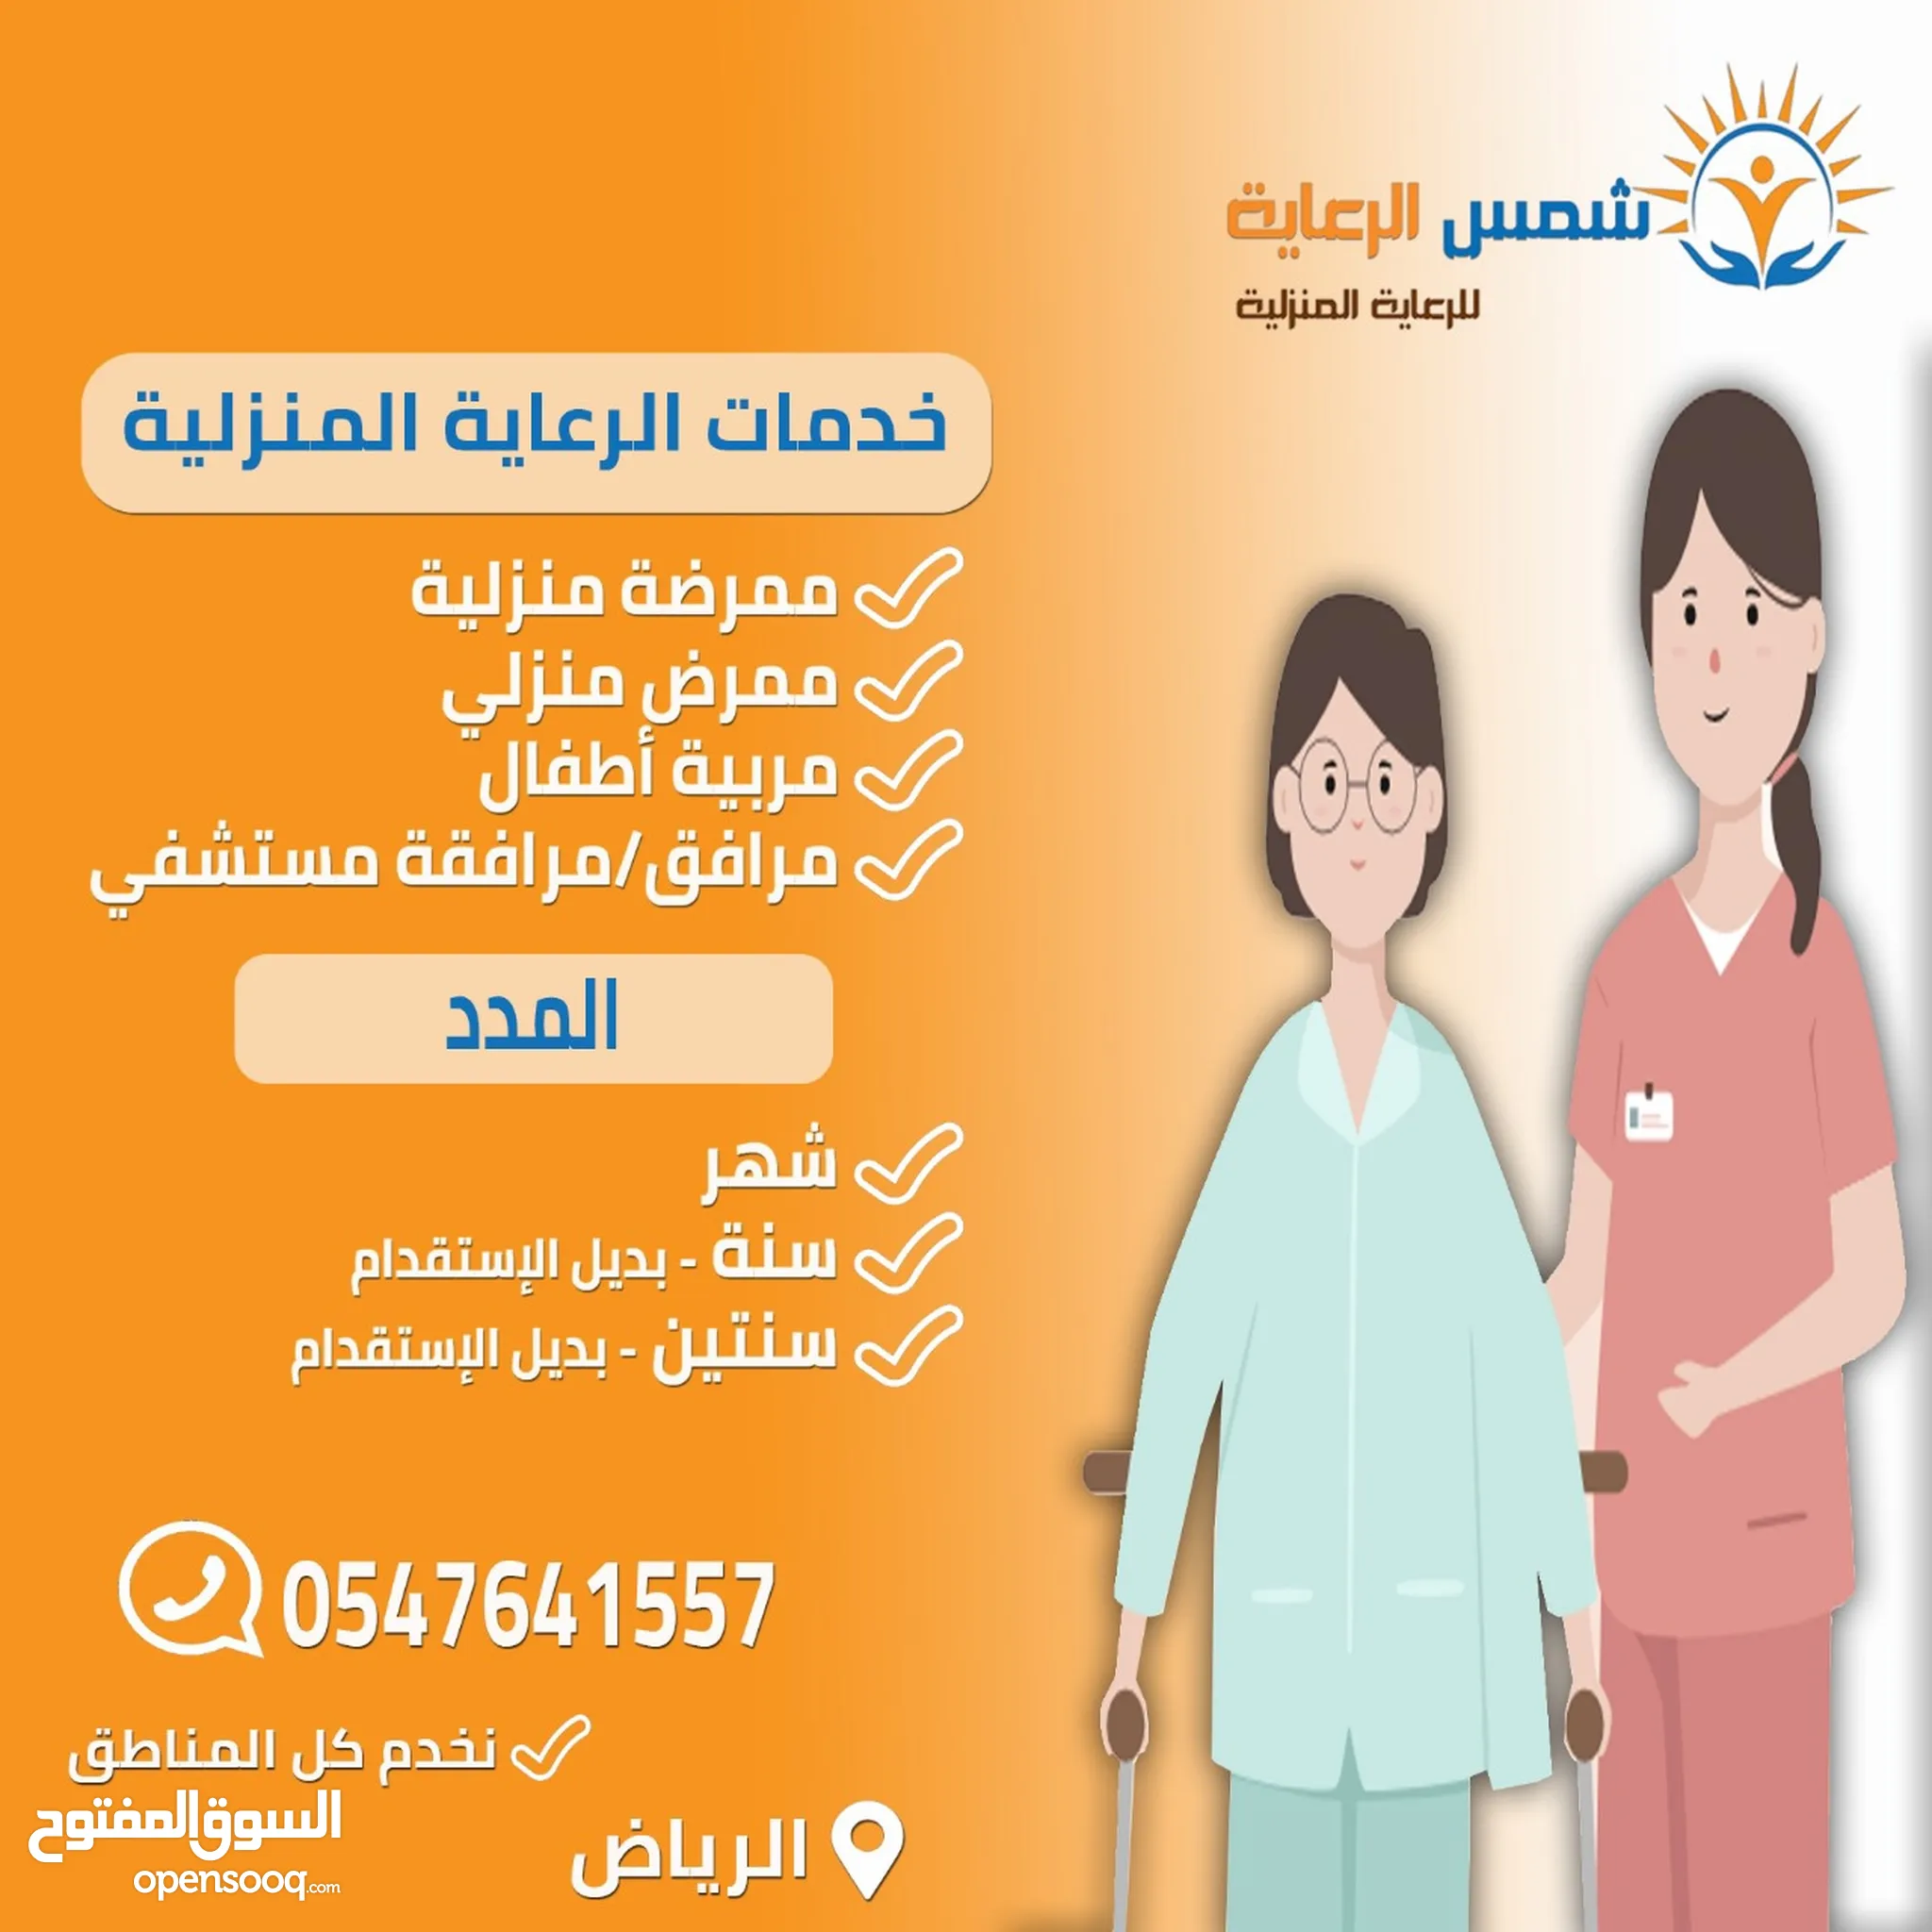 خدمات رعاية منزلية في الرياض : استقدام خادمات بالشهر, للتنازل : عاملات  بالساعة | السوق المفتوح